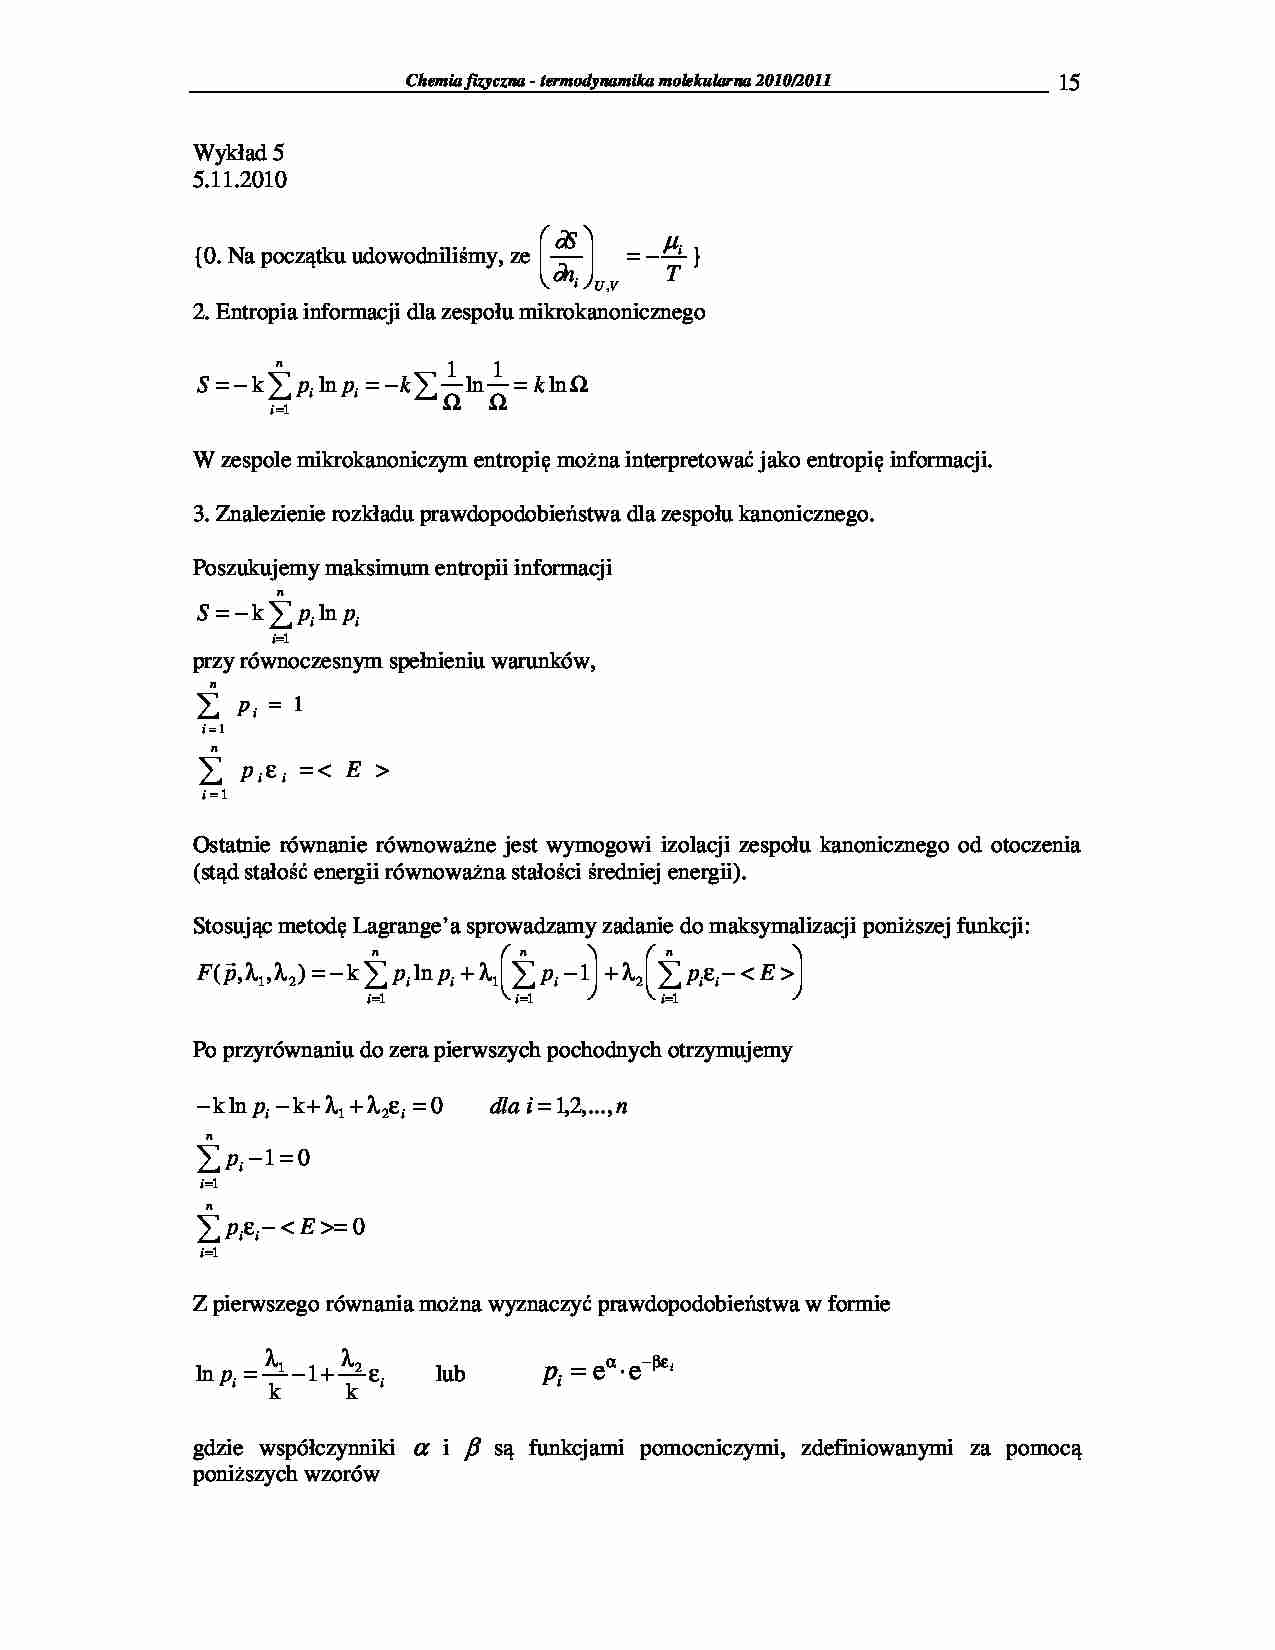 Chemia fizyczna - termodynamika molekularna 2009/2010-wykłady19 - strona 1